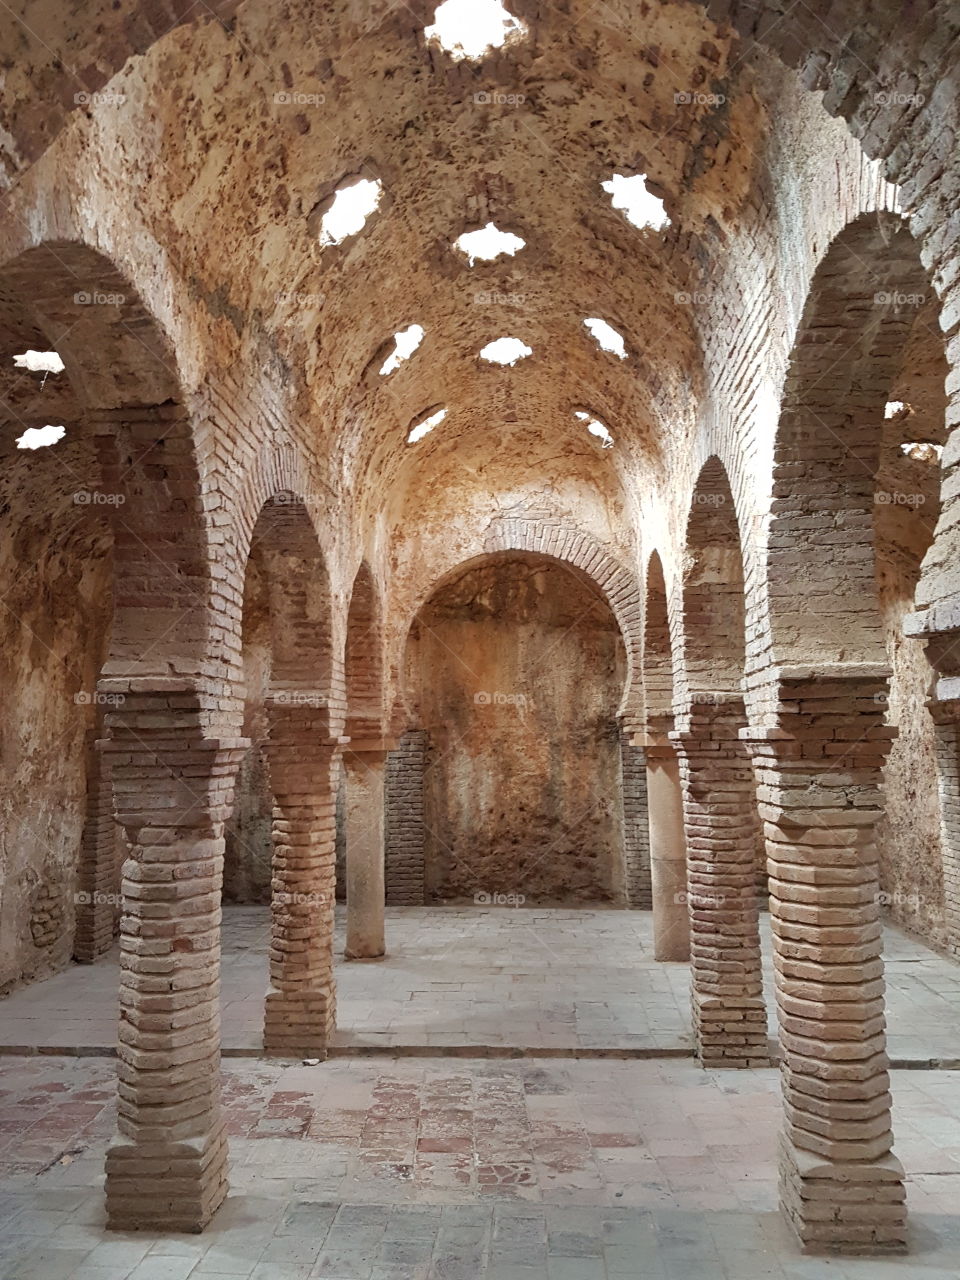 Ancient Arabic baths in Spain